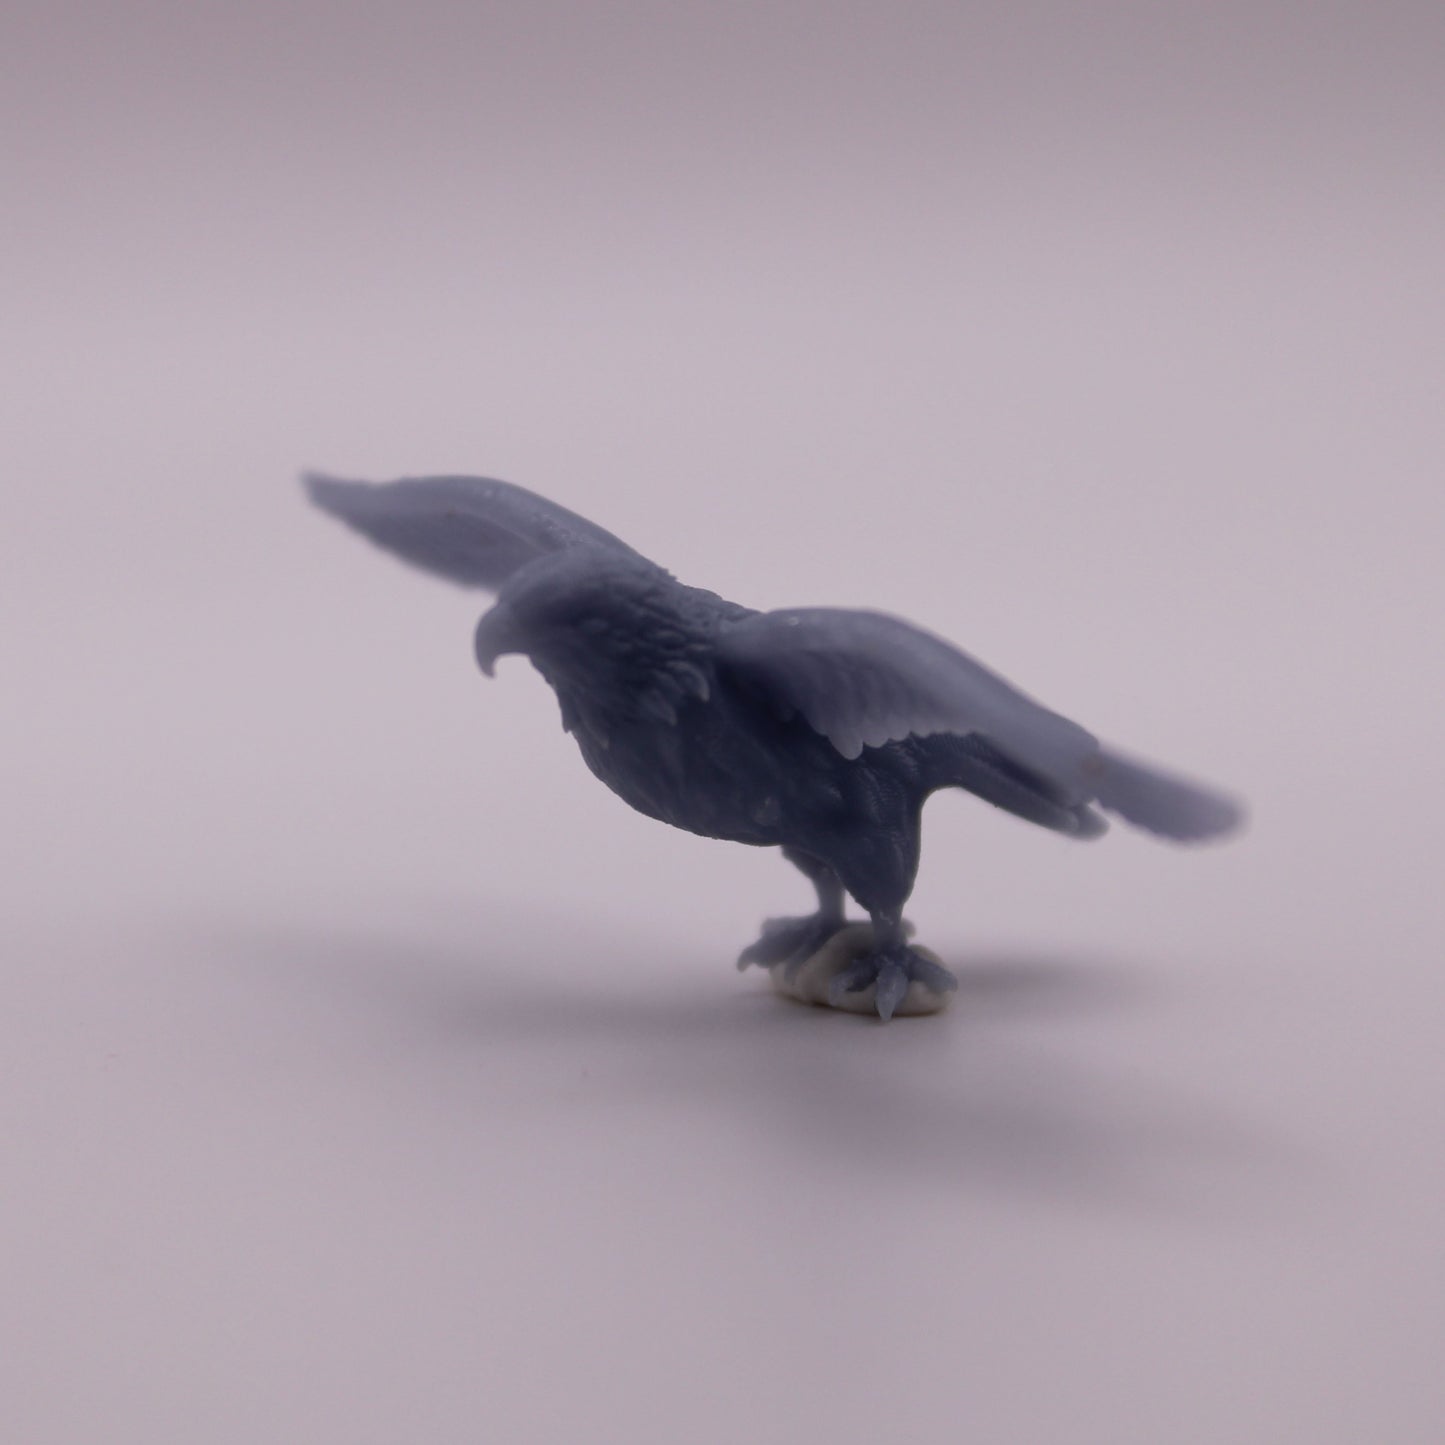 Eagle Miniature